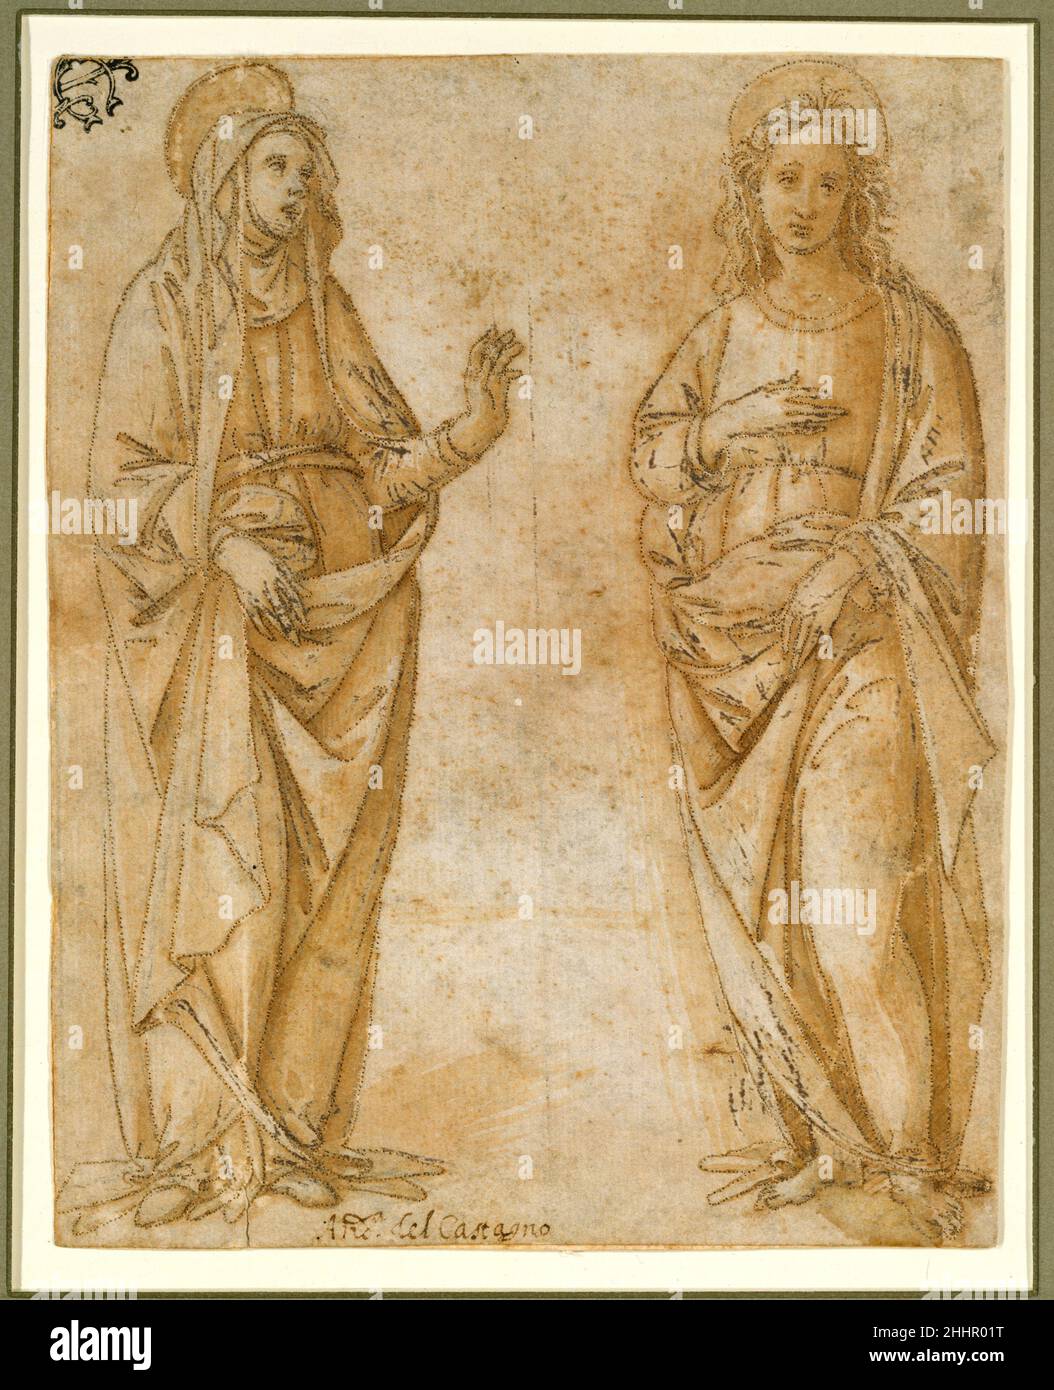 La Vierge et Saint Jean l'évangéliste vers 1500 attribué à Raffaellino del Garbo (également connu sous le nom de Raffaelle de' Capponi et Raffaelle de' Carli) Italien les trous très finement prisés sur les contours de ce dessin suggèrent qu'il peut avoir servi de dessin pour la broderie,peut-être pour le cap d'un chasuble (veston liturgique) ou d'un autel frontal.Le style de dessin ressemble à l'œuvre de l'artiste florentin Raffaelino del Garbo, qui, selon le biographe et artiste du XVIe siècle Giorgio Vasari, a réalisé des dessins pour la broderie : « [Raffaelino] a été employé par certaines religieuses et autres Banque D'Images